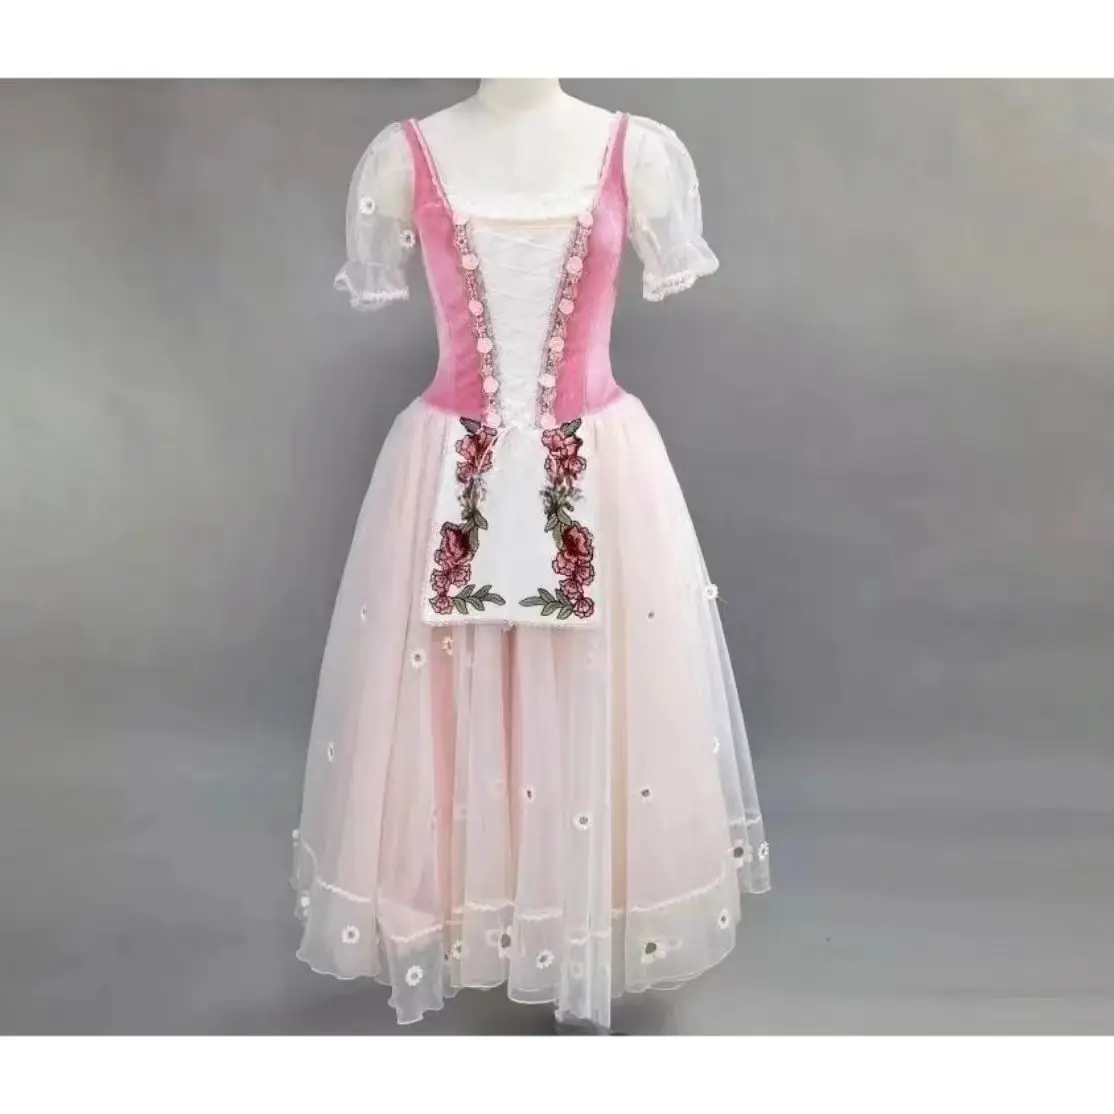 

Профессиональная балетная юбка, длинная юбка, изготовленная на заказ сказочное платье конфетного цвета для дочери и другие вариации для соревнований по выступлениям